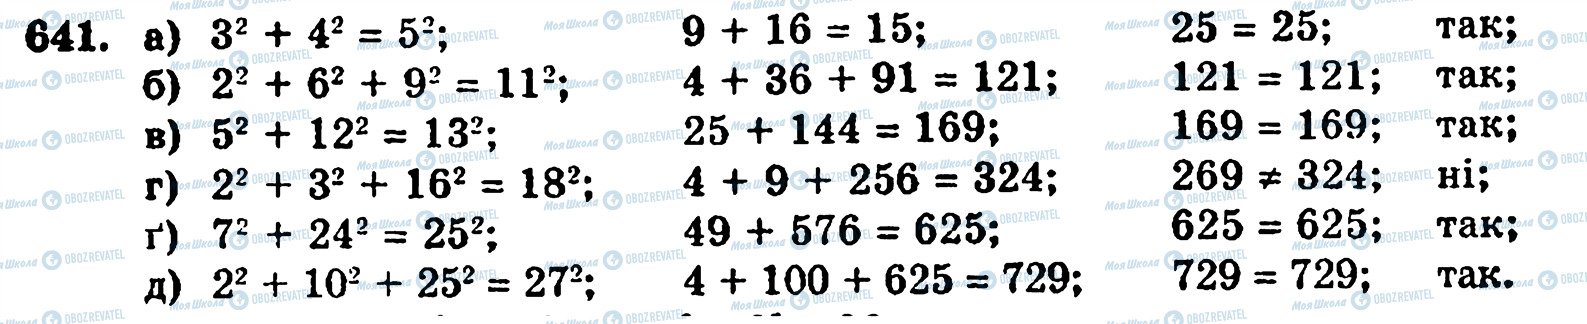 ГДЗ Математика 5 класс страница 641